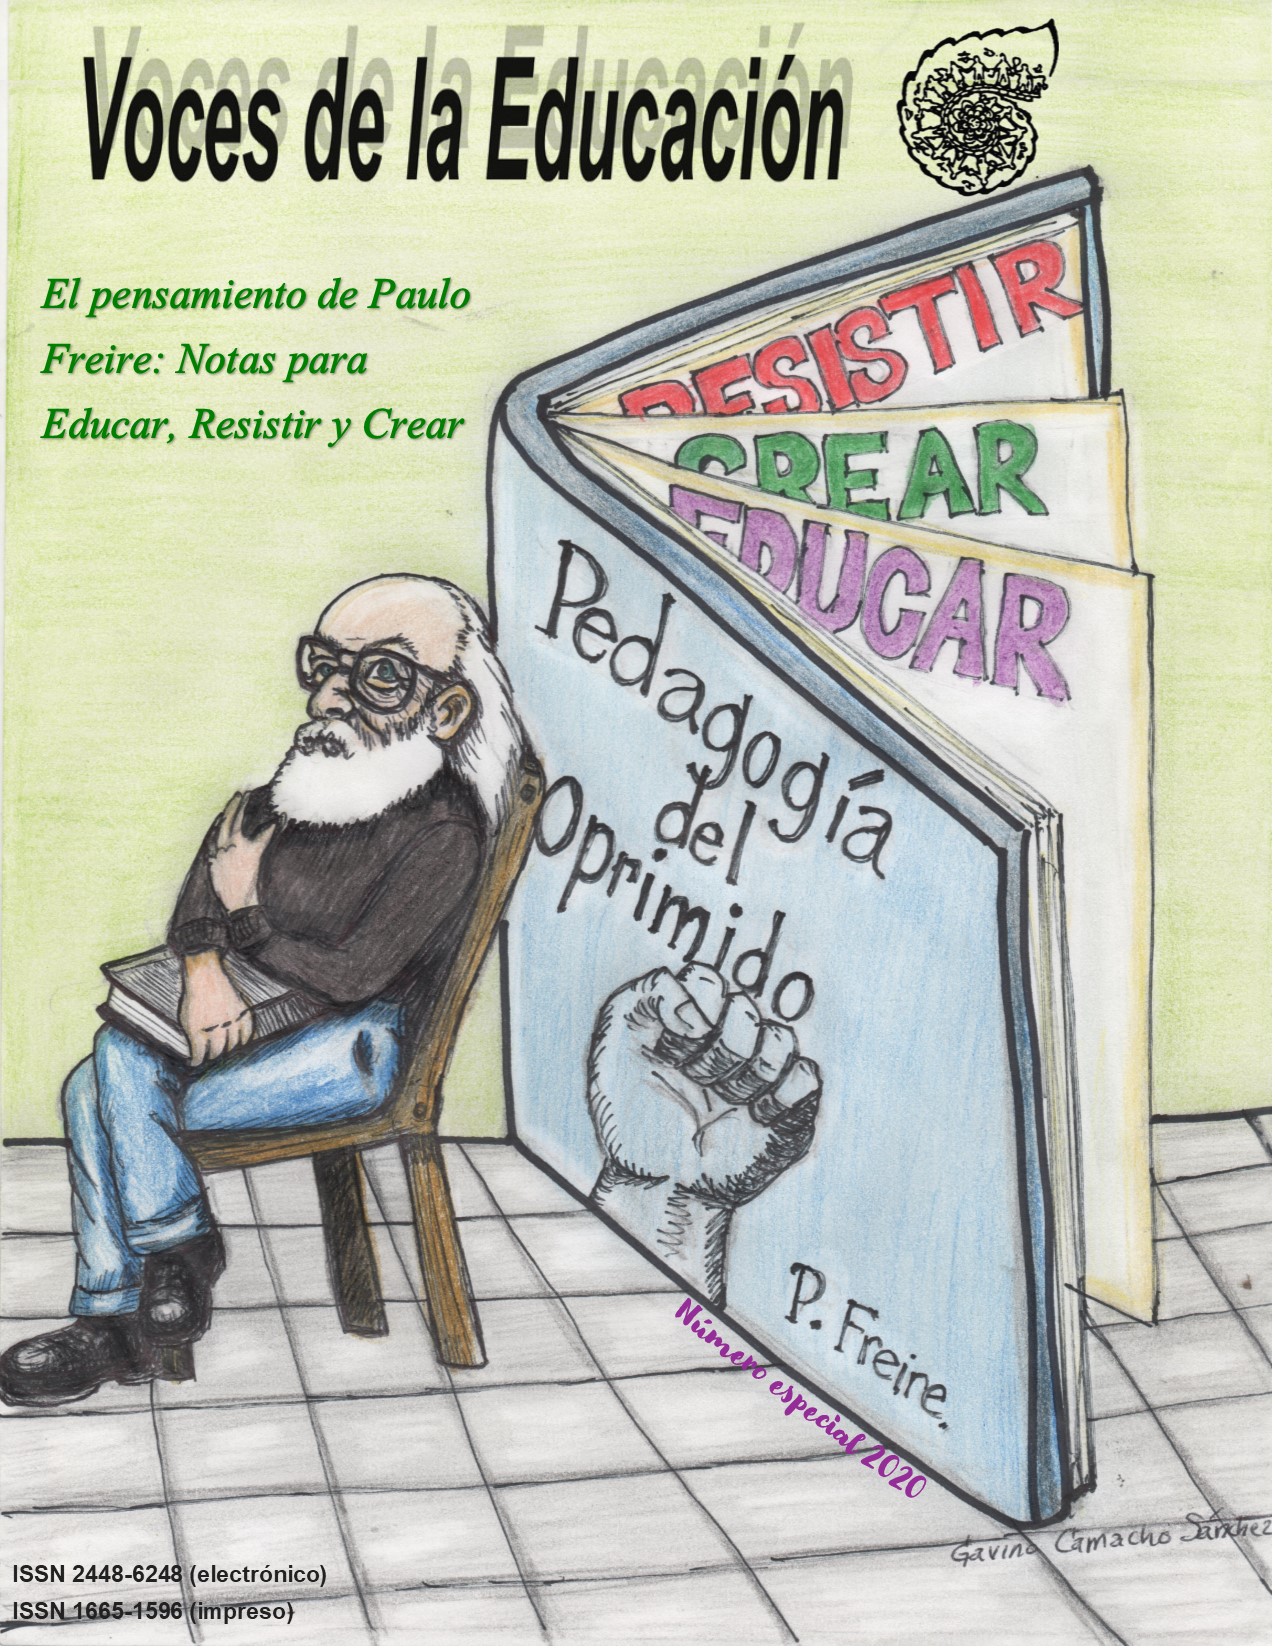 2020: El pensamiento de Paulo Freire: Notas para educar, resistir y crear |  Voces de la educación